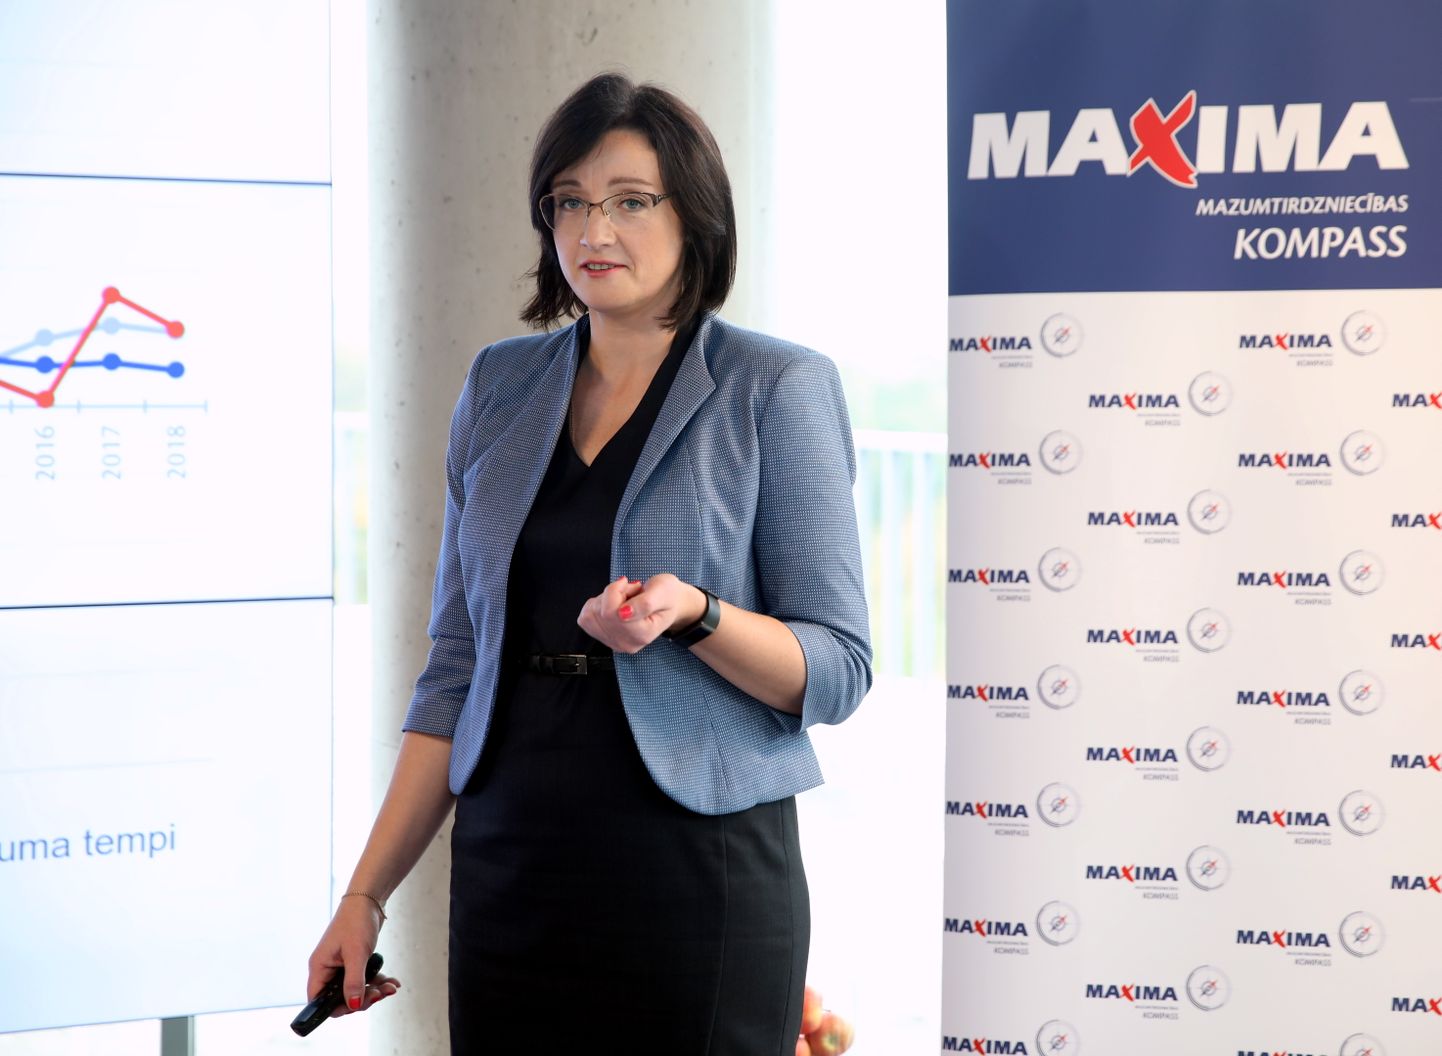 Maxima Latvija ärianalüütika osakonna juht Zane Kaktina 10.10 toimunud Maxima jaekaubanduskonverentsil